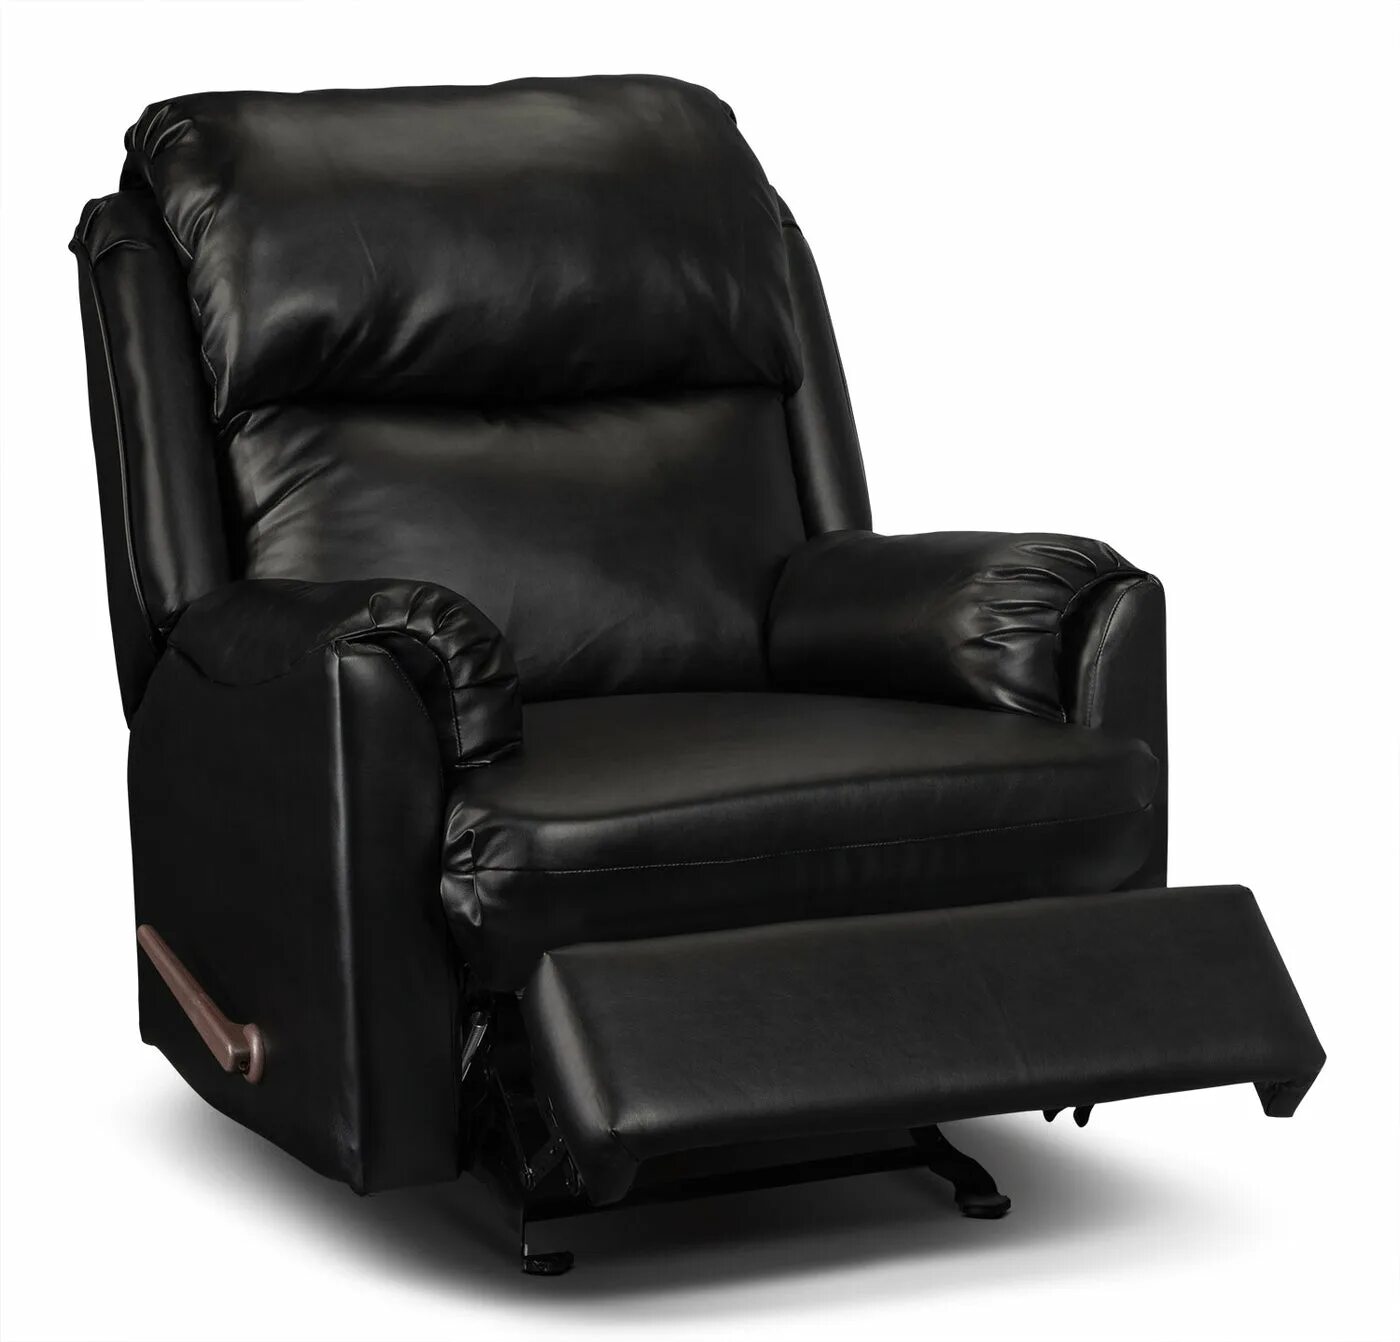 Высокое кожаное кресло. Black Faux Leather Recliner Chair. Кресло кожаное Furniture 9589 Black. Кресло реклайнер Пегас Блэк. Кресло кожа черн.Orion Steel.